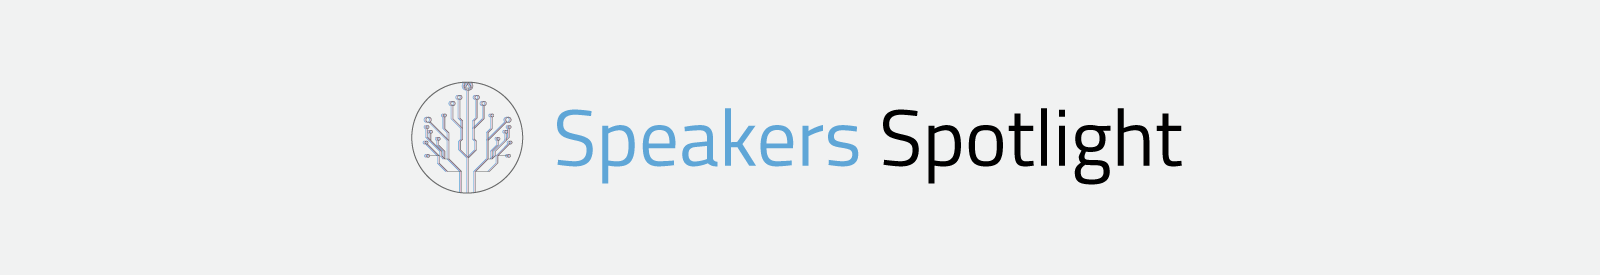 Speakers-Spotlight_Banner